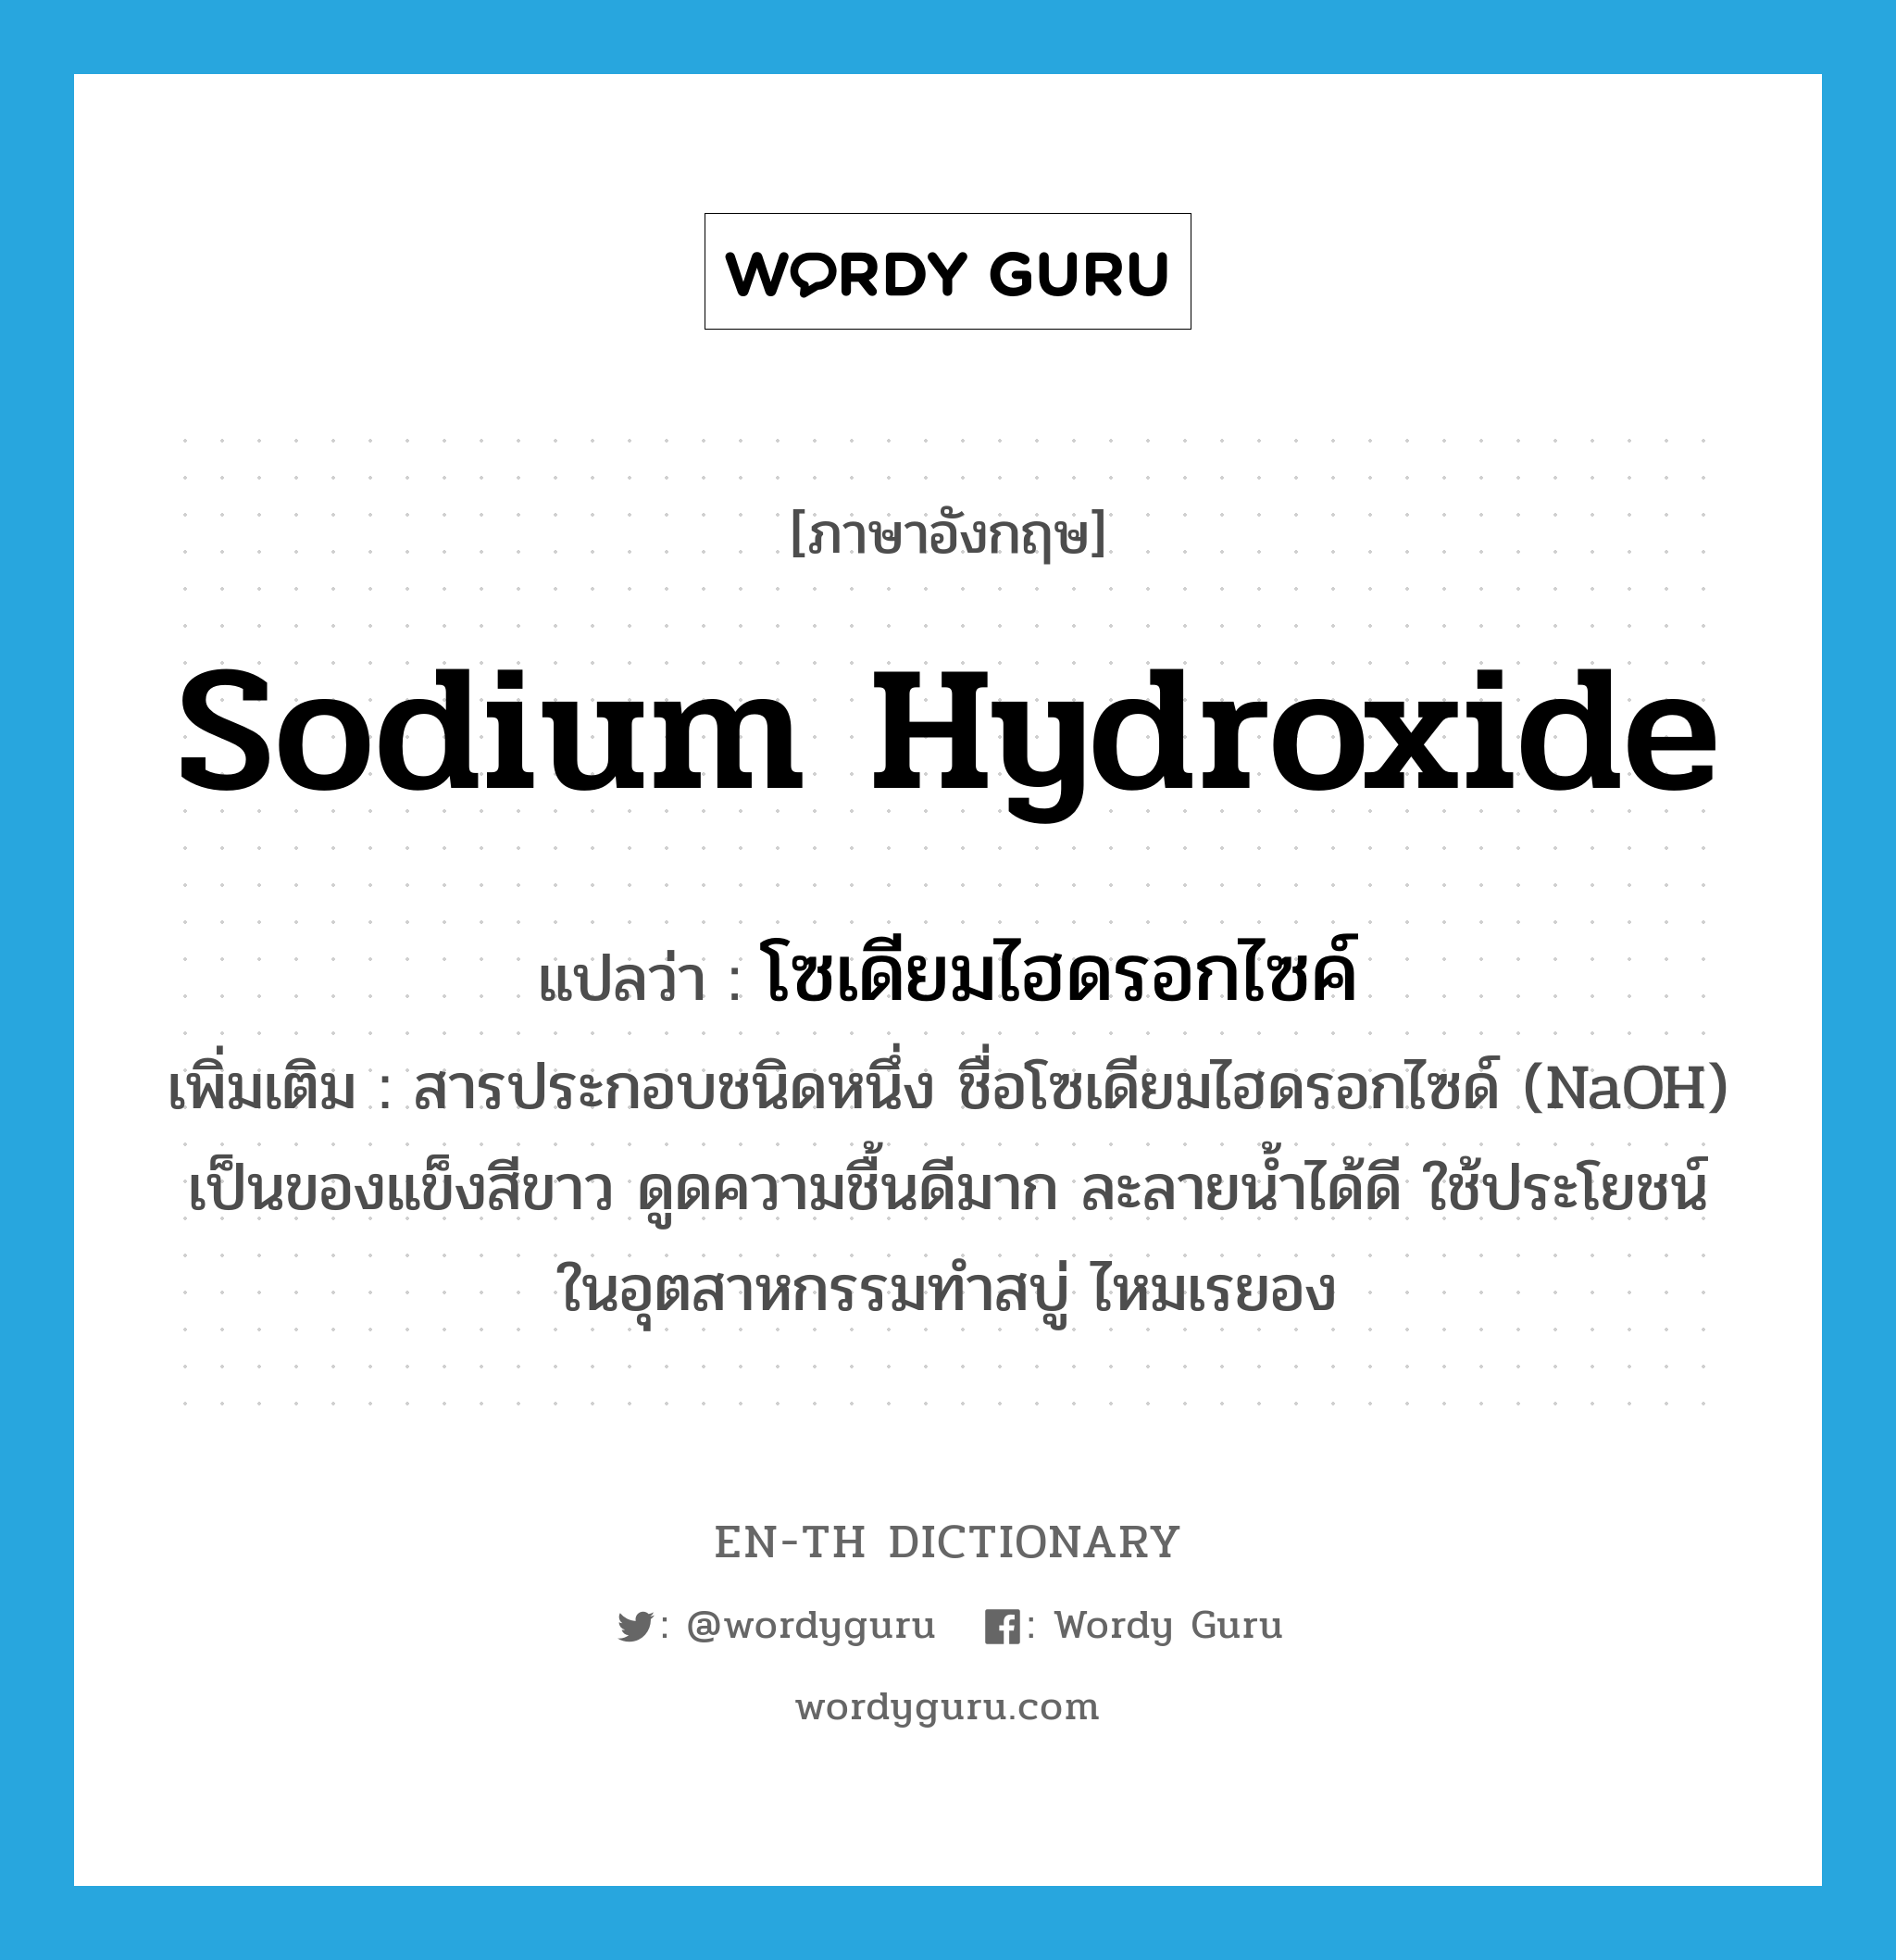 โซเดียมไฮดรอกไซค์ ภาษาอังกฤษ?, คำศัพท์ภาษาอังกฤษ โซเดียมไฮดรอกไซค์ แปลว่า sodium hydroxide ประเภท N เพิ่มเติม สารประกอบชนิดหนึ่ง ชื่อโซเดียมไฮดรอกไซด์ (NaOH) เป็นของแข็งสีขาว ดูดความชื้นดีมาก ละลายน้ำได้ดี ใช้ประโยชน์ในอุตสาหกรรมทำสบู่ ไหมเรยอง หมวด N